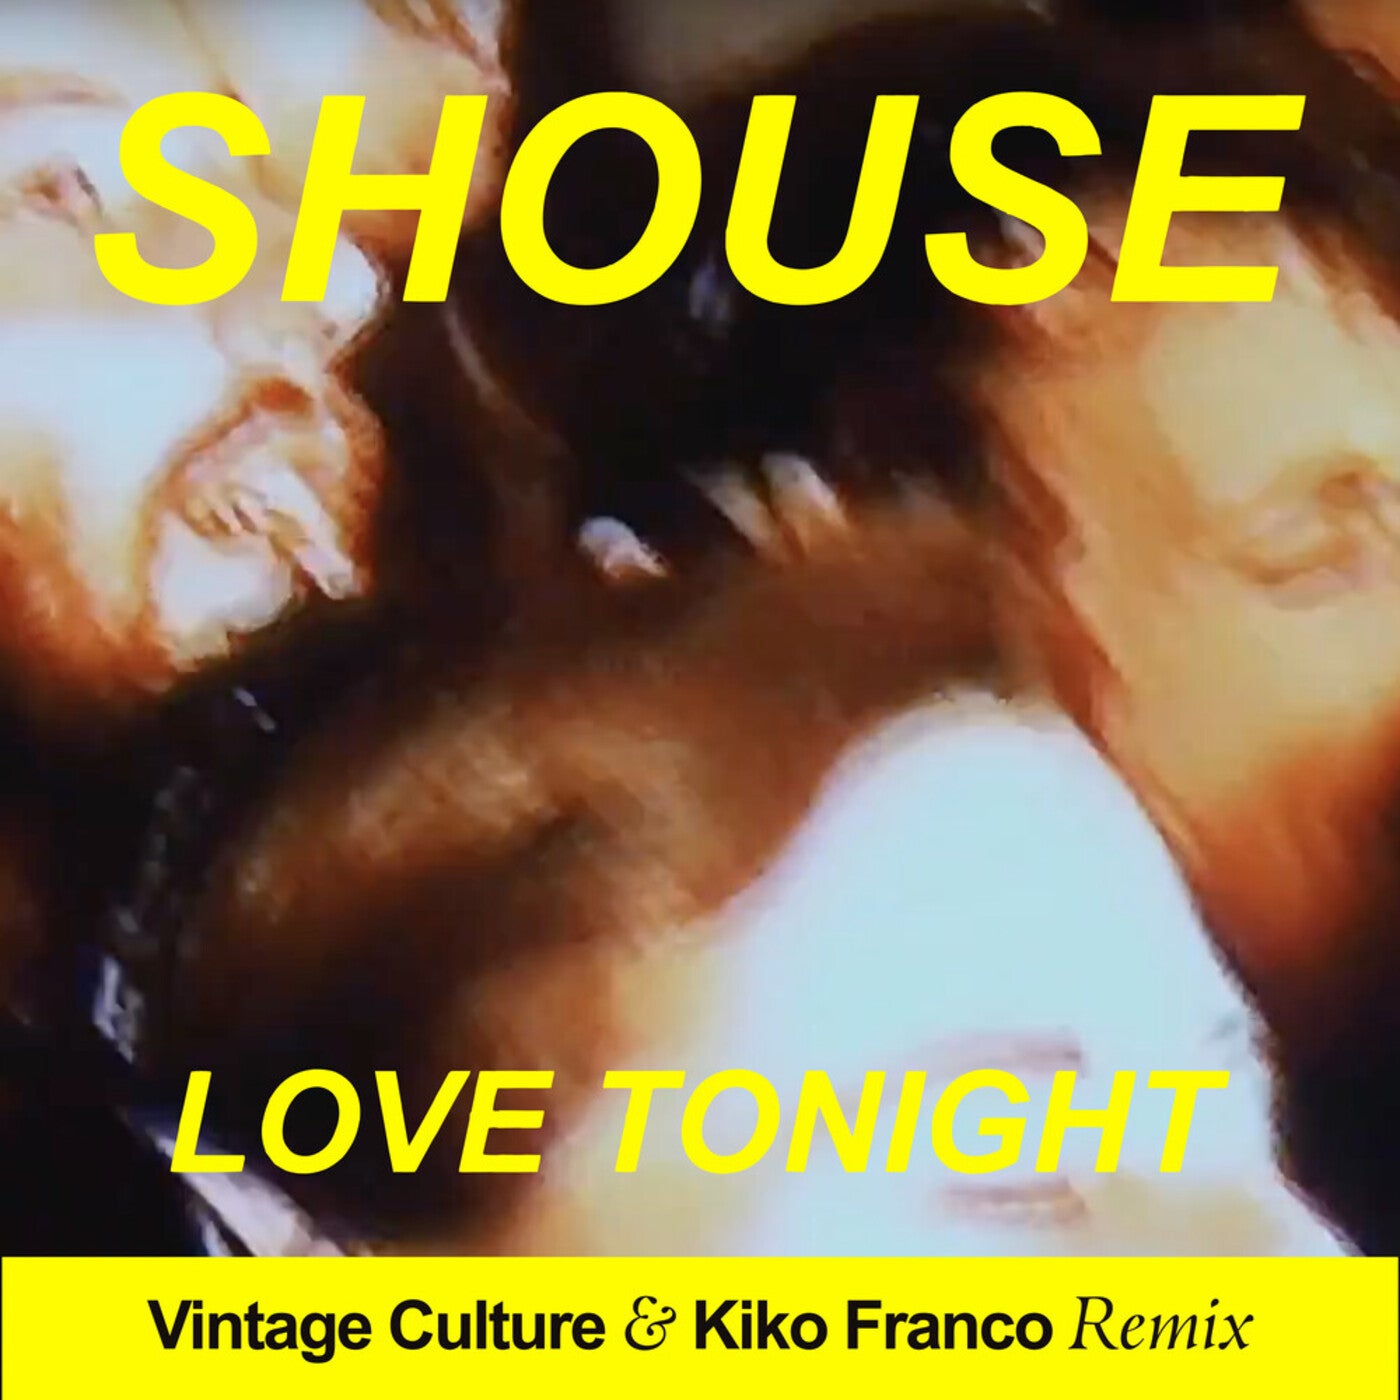 Shouse - Love Tonight (Vintage Culture & Kiko Franco Remix)